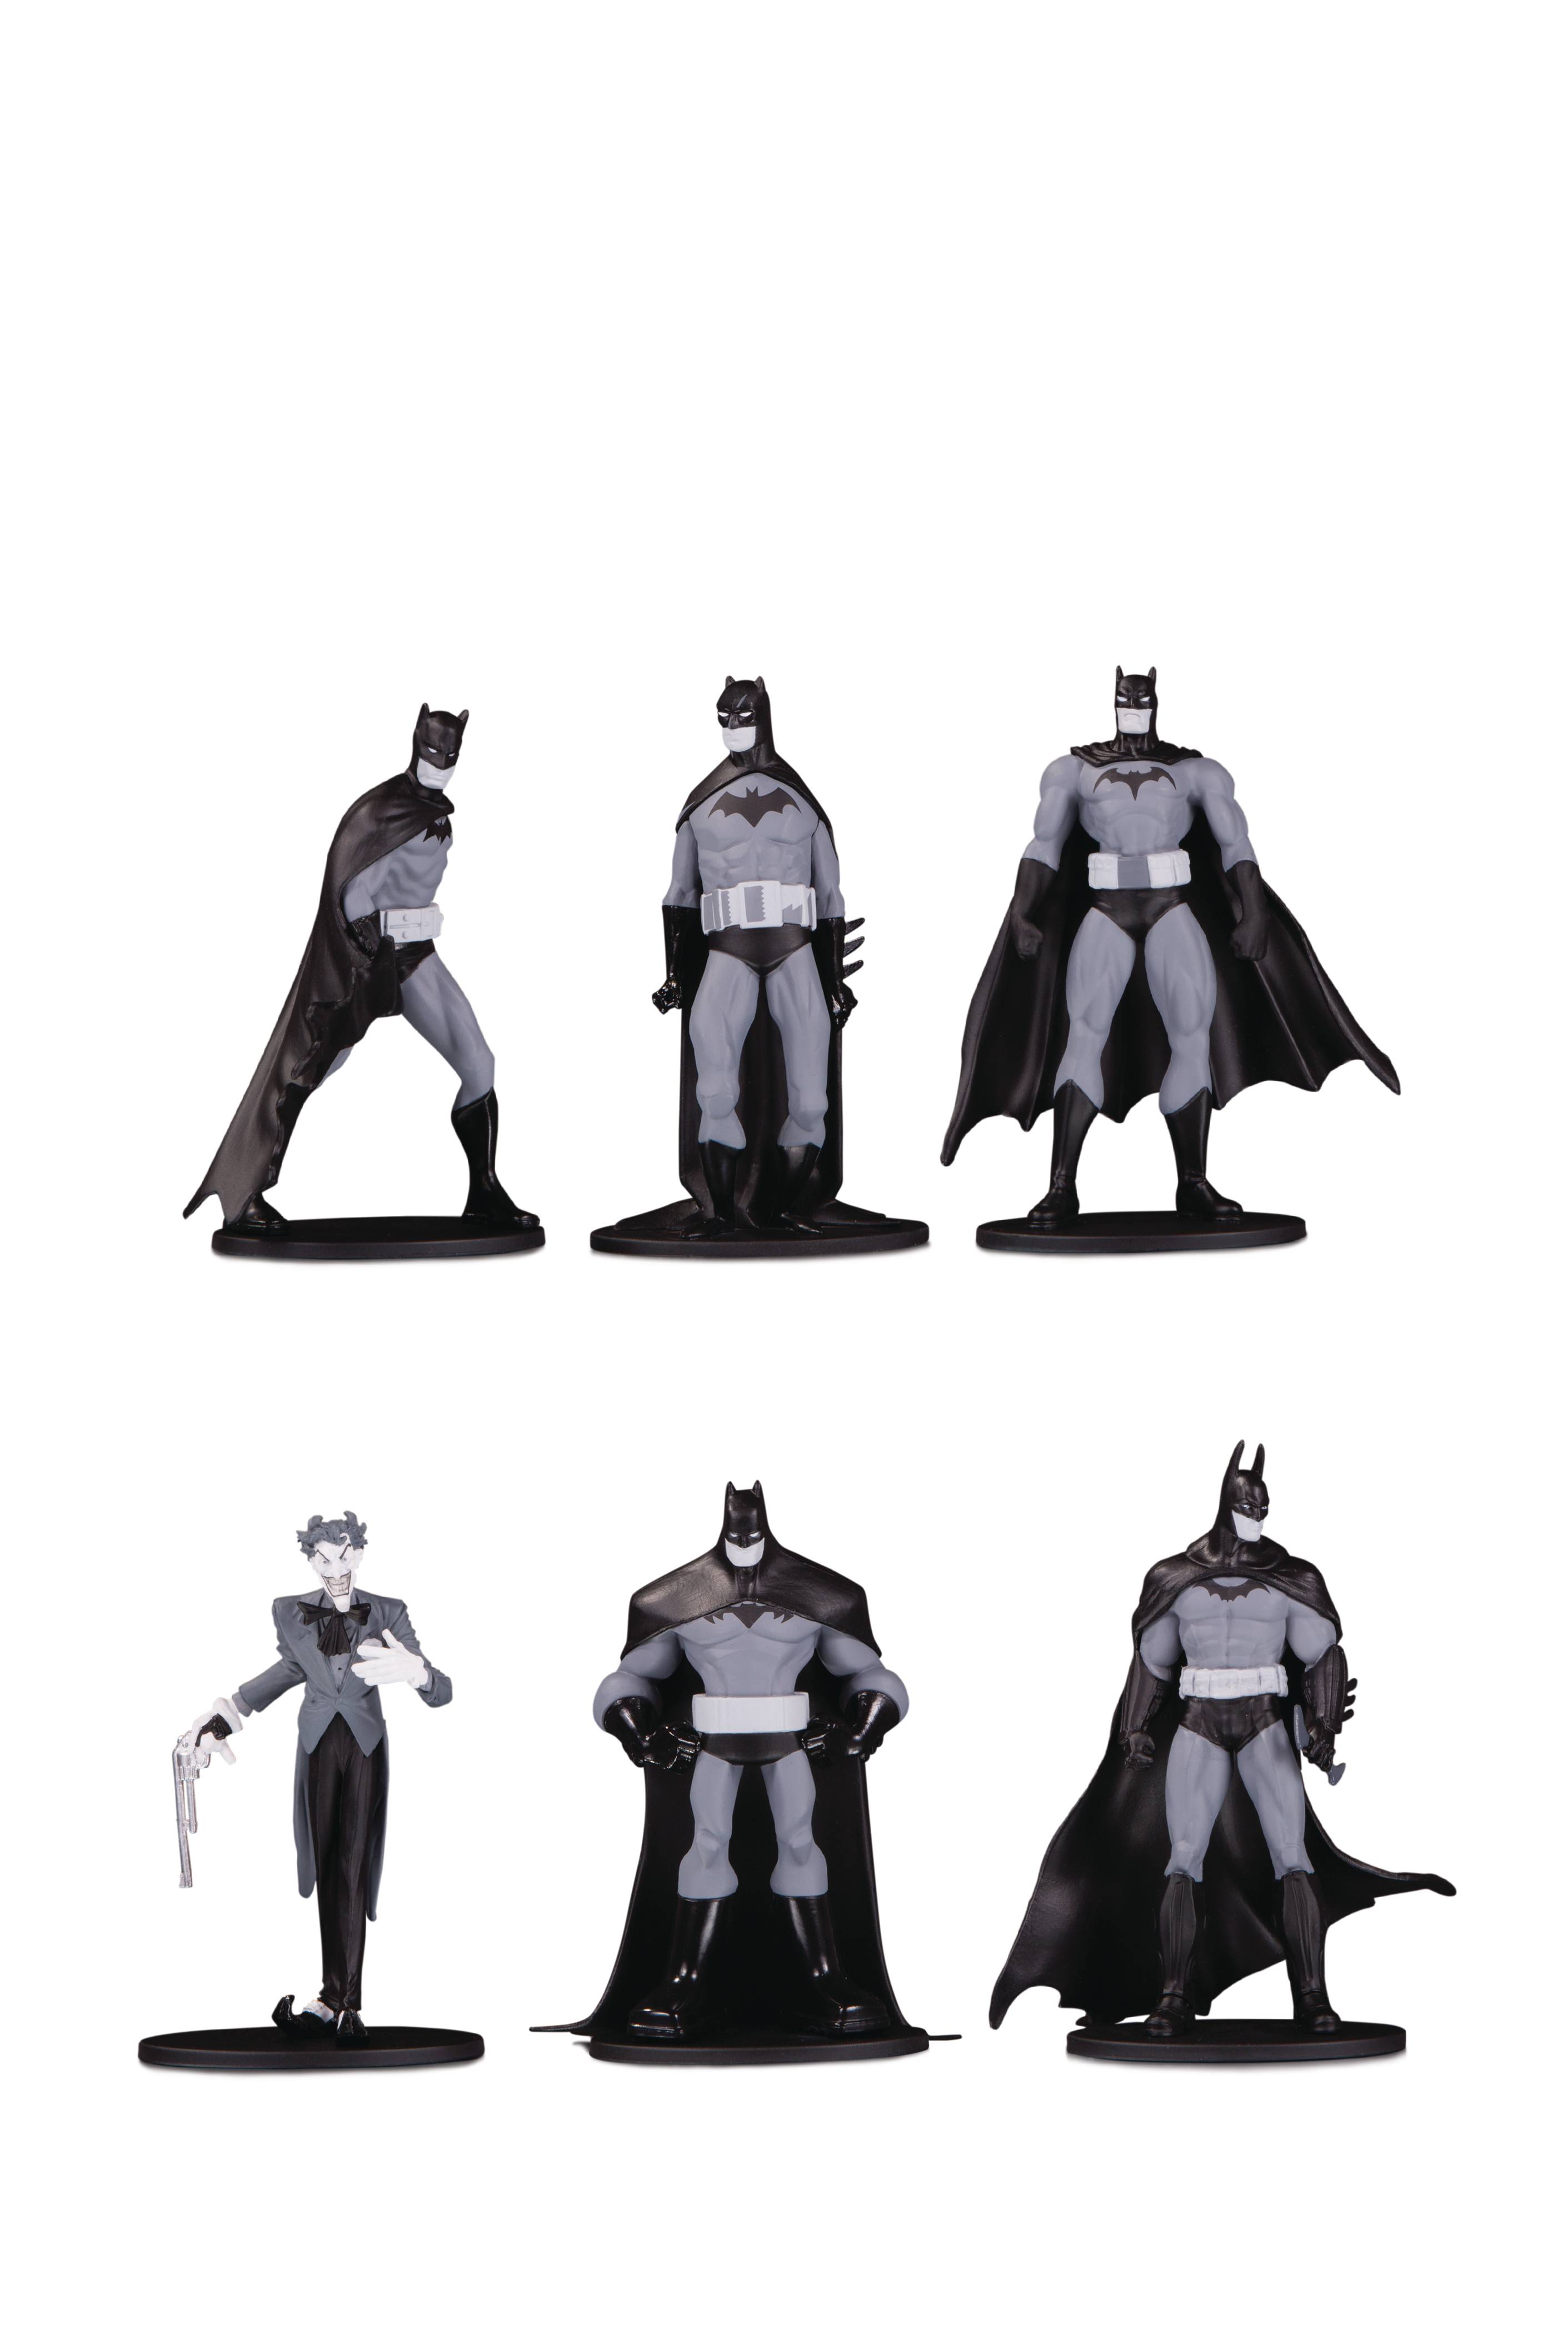 batman black and white mini